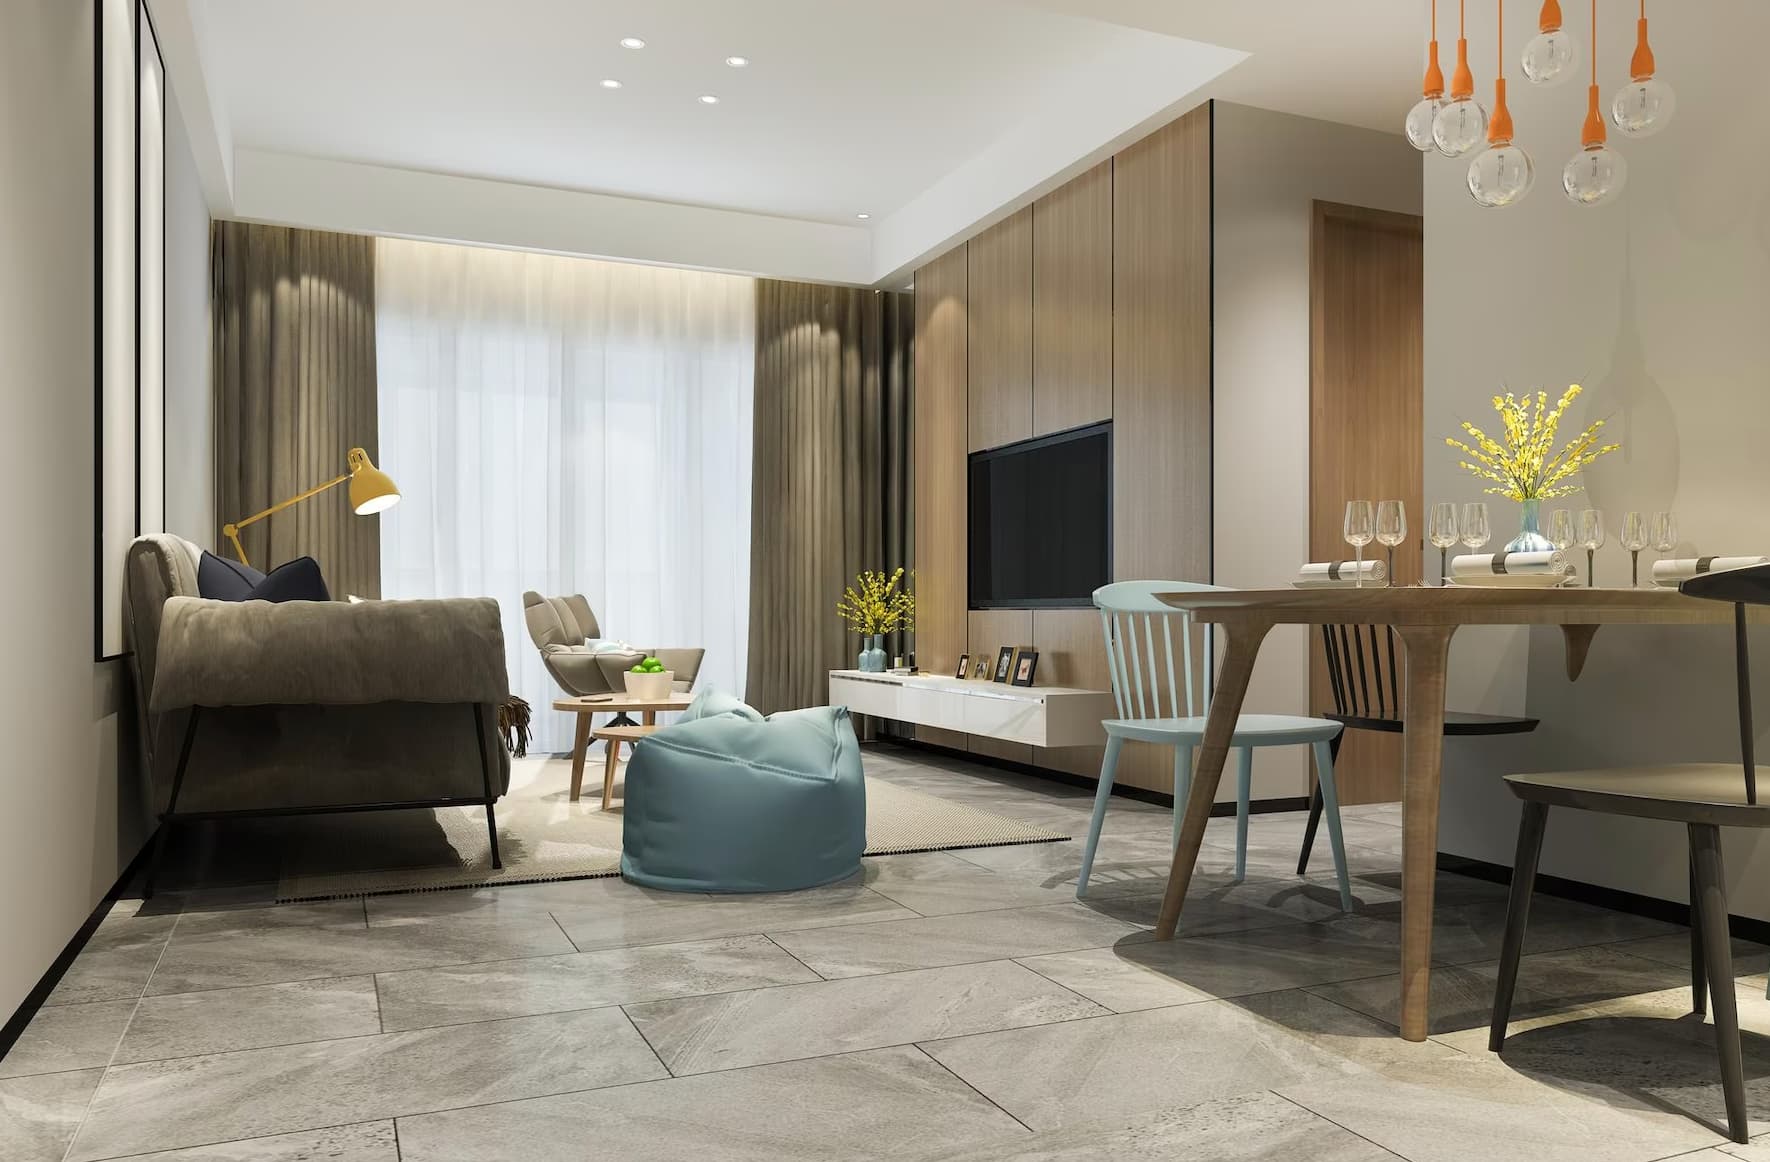 Modern Floor Tile Design Ideas for Living Room | Floor Tiles Ideas - YouTube